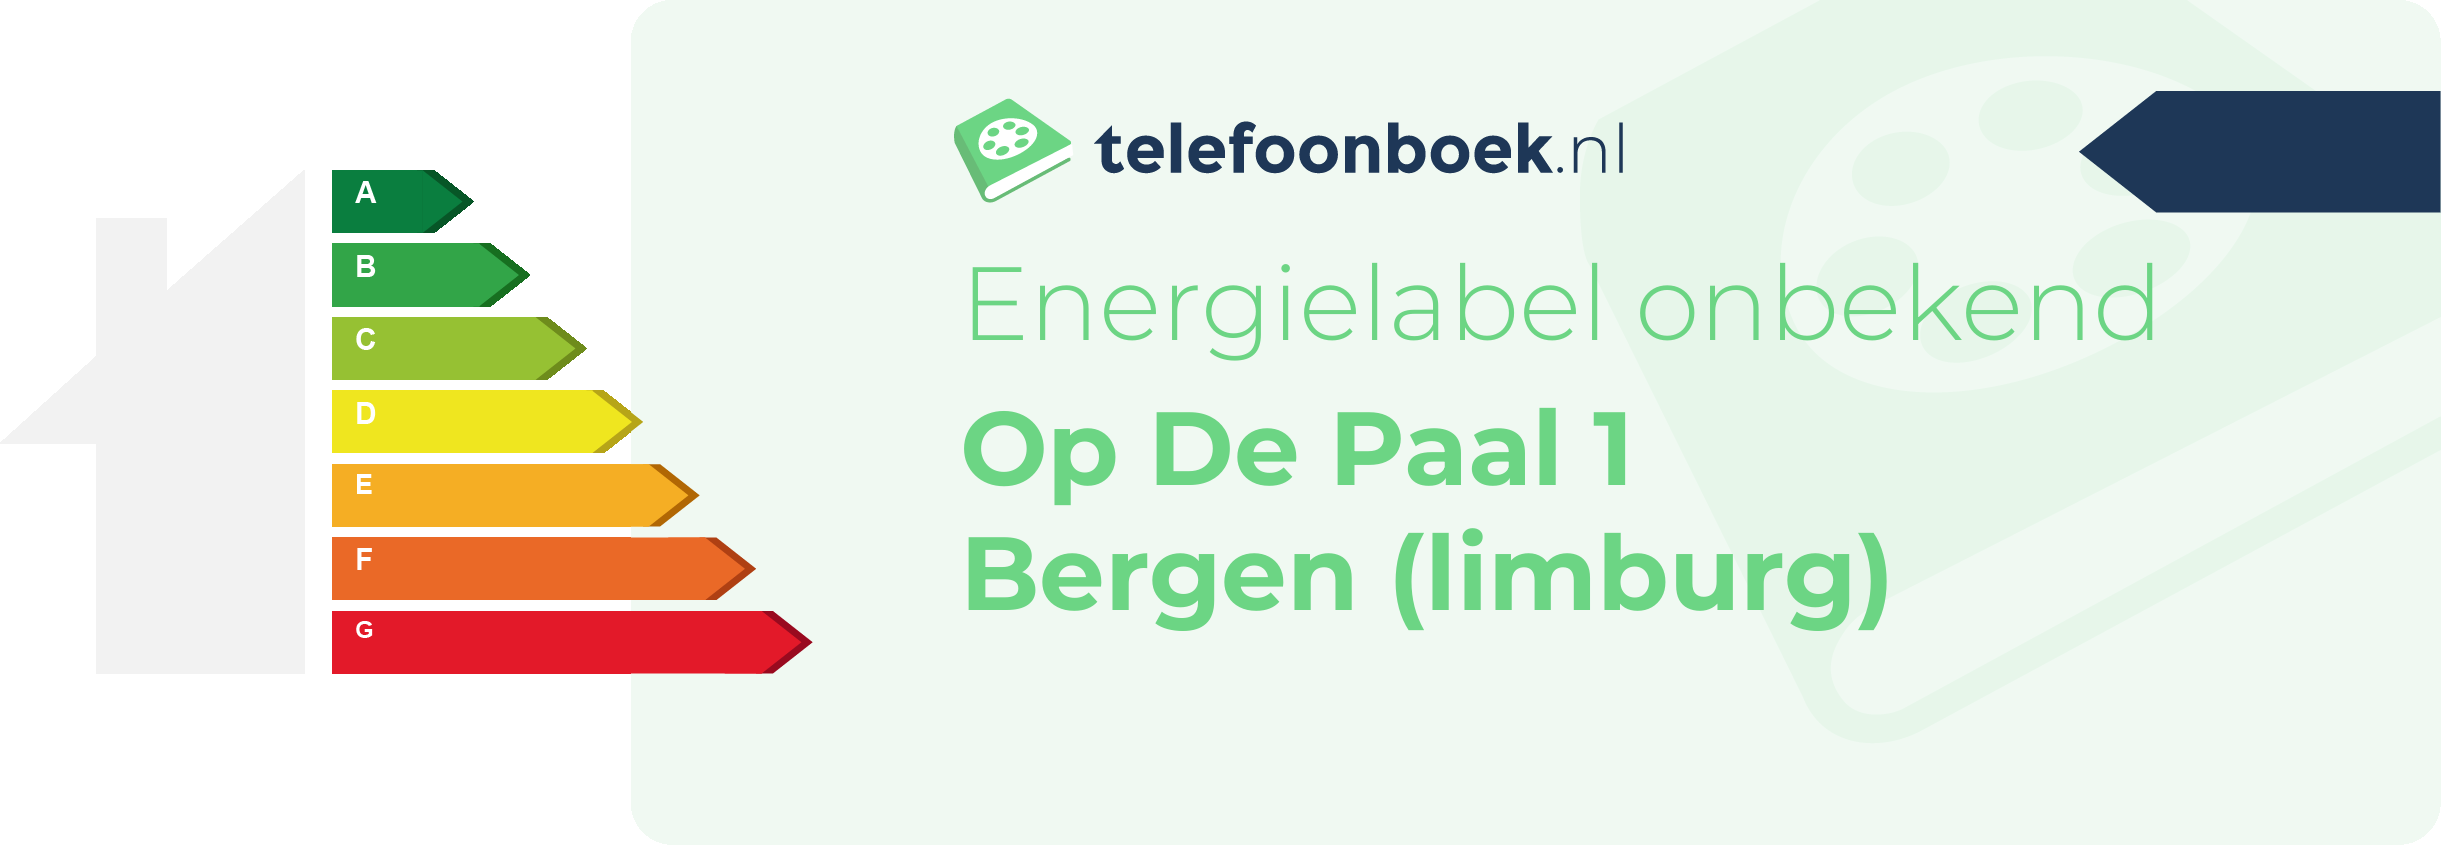 Energielabel Op De Paal 1 Bergen (Limburg)